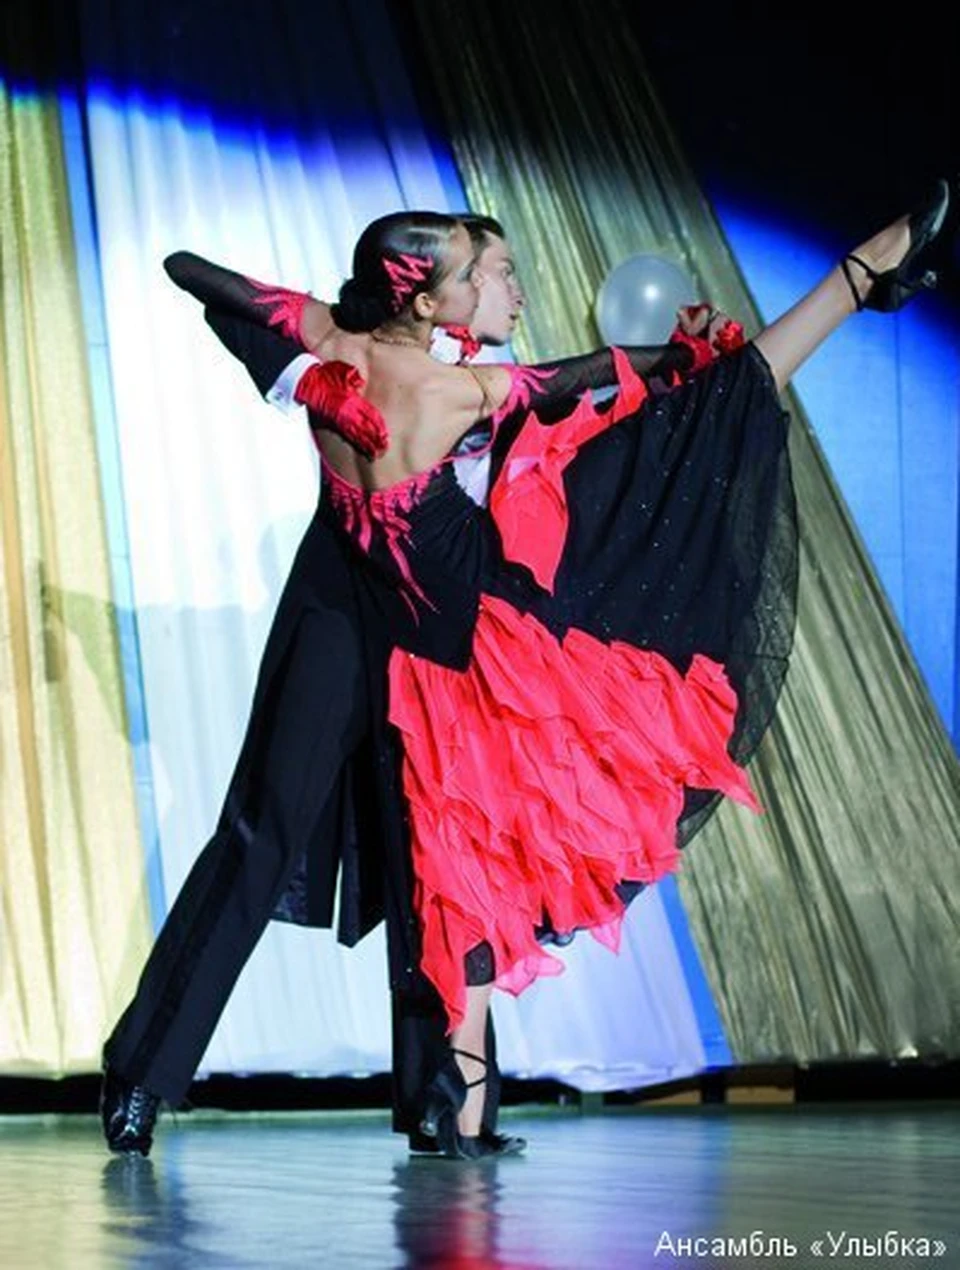 Ансамбль «Улыбка» - неординарное явление в мире танца. Фото Олег БЕЛОВ.